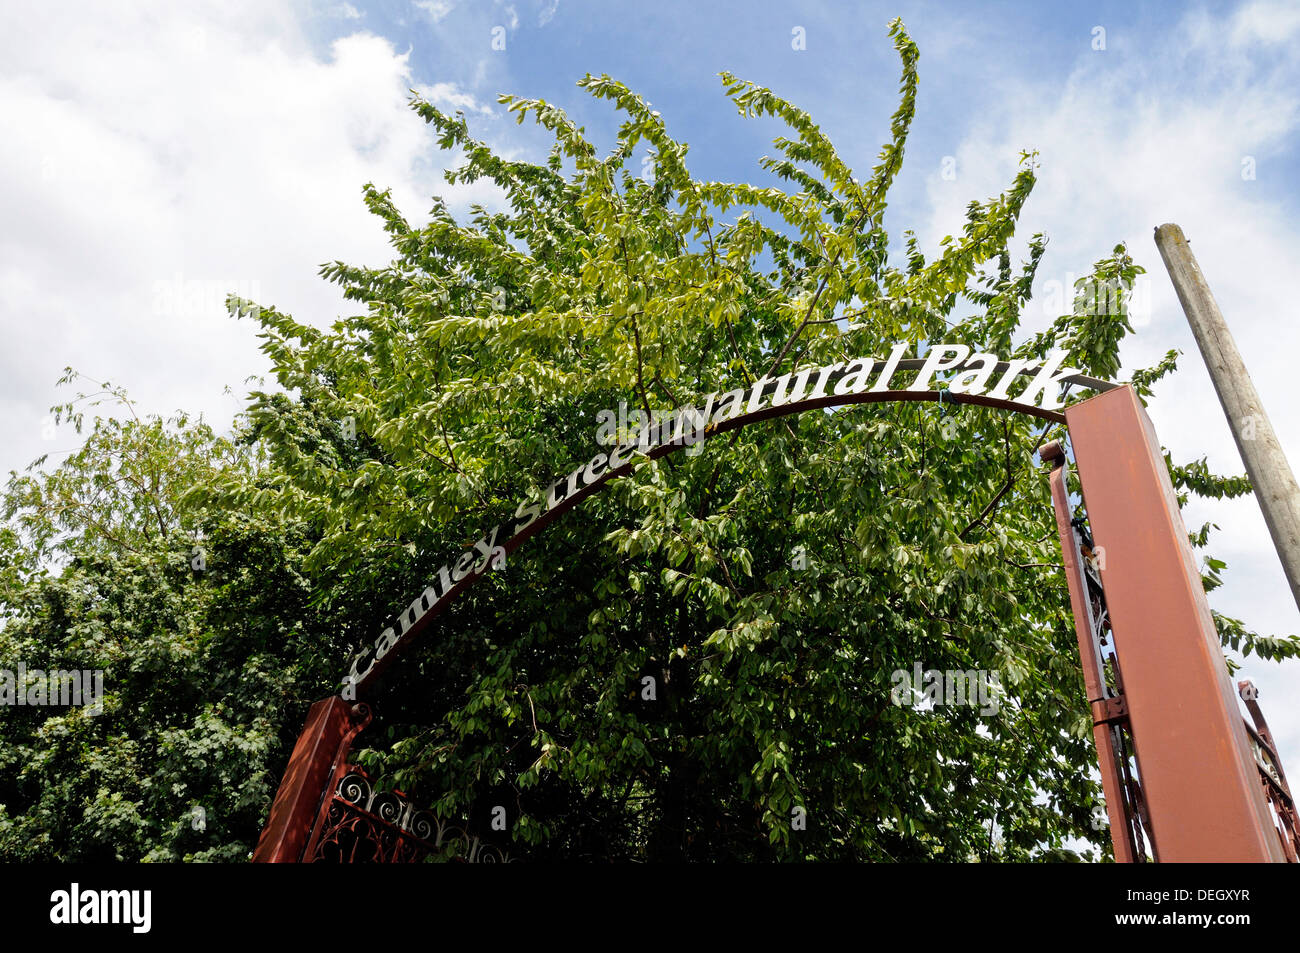 Camley Street Natura Park, segno sopra il cancello di ingresso al parco, Kings Cross, London Borough of Camden, Engalnd, REGNO UNITO Foto Stock